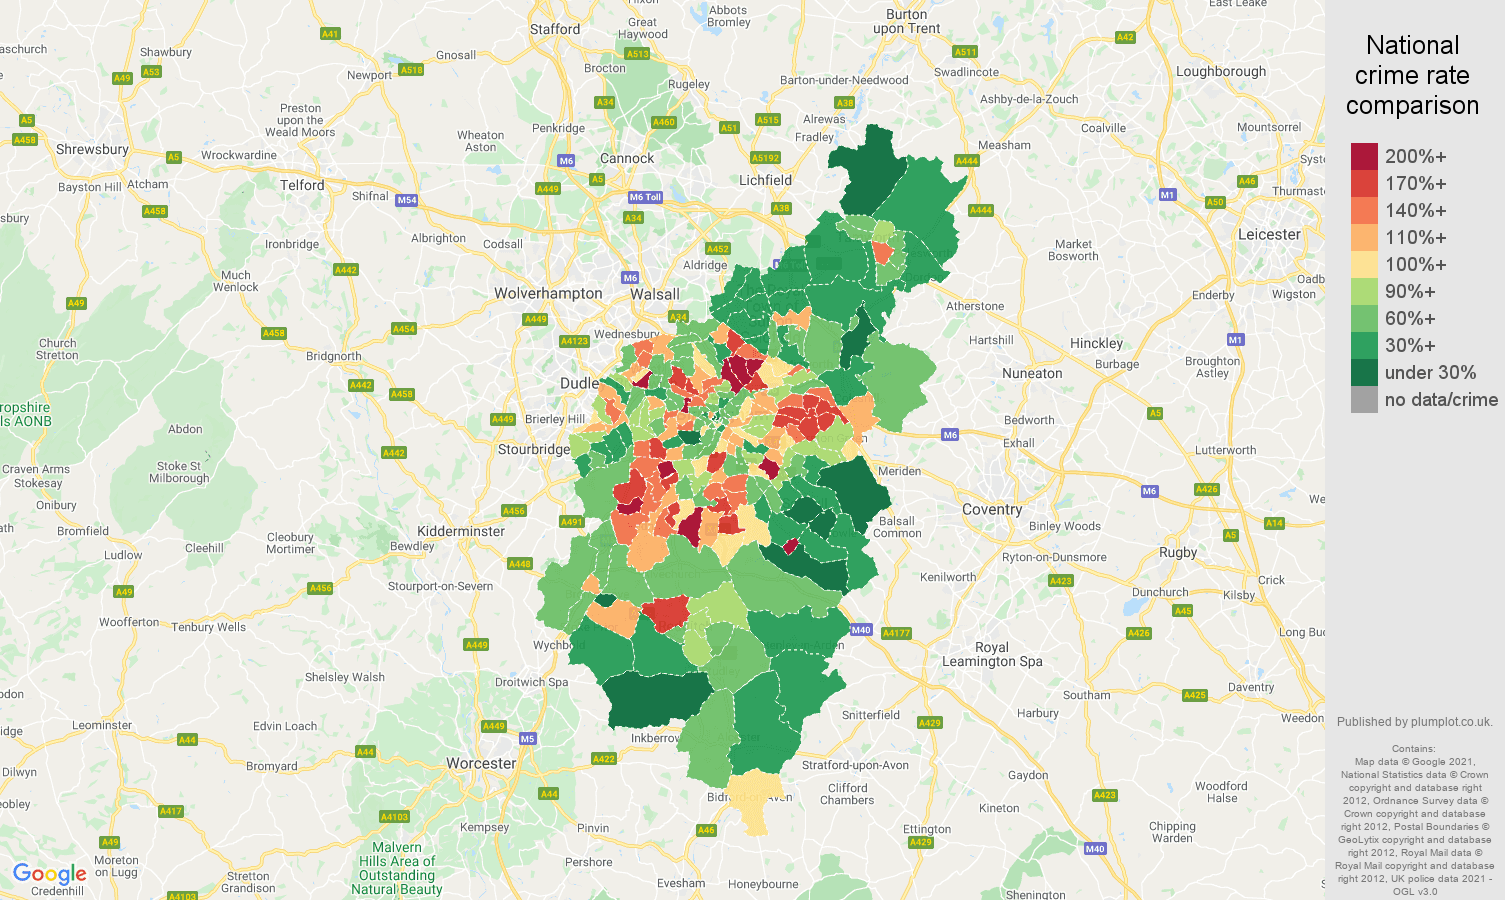 Birmingham criminal damage and arson crime rate comparison map